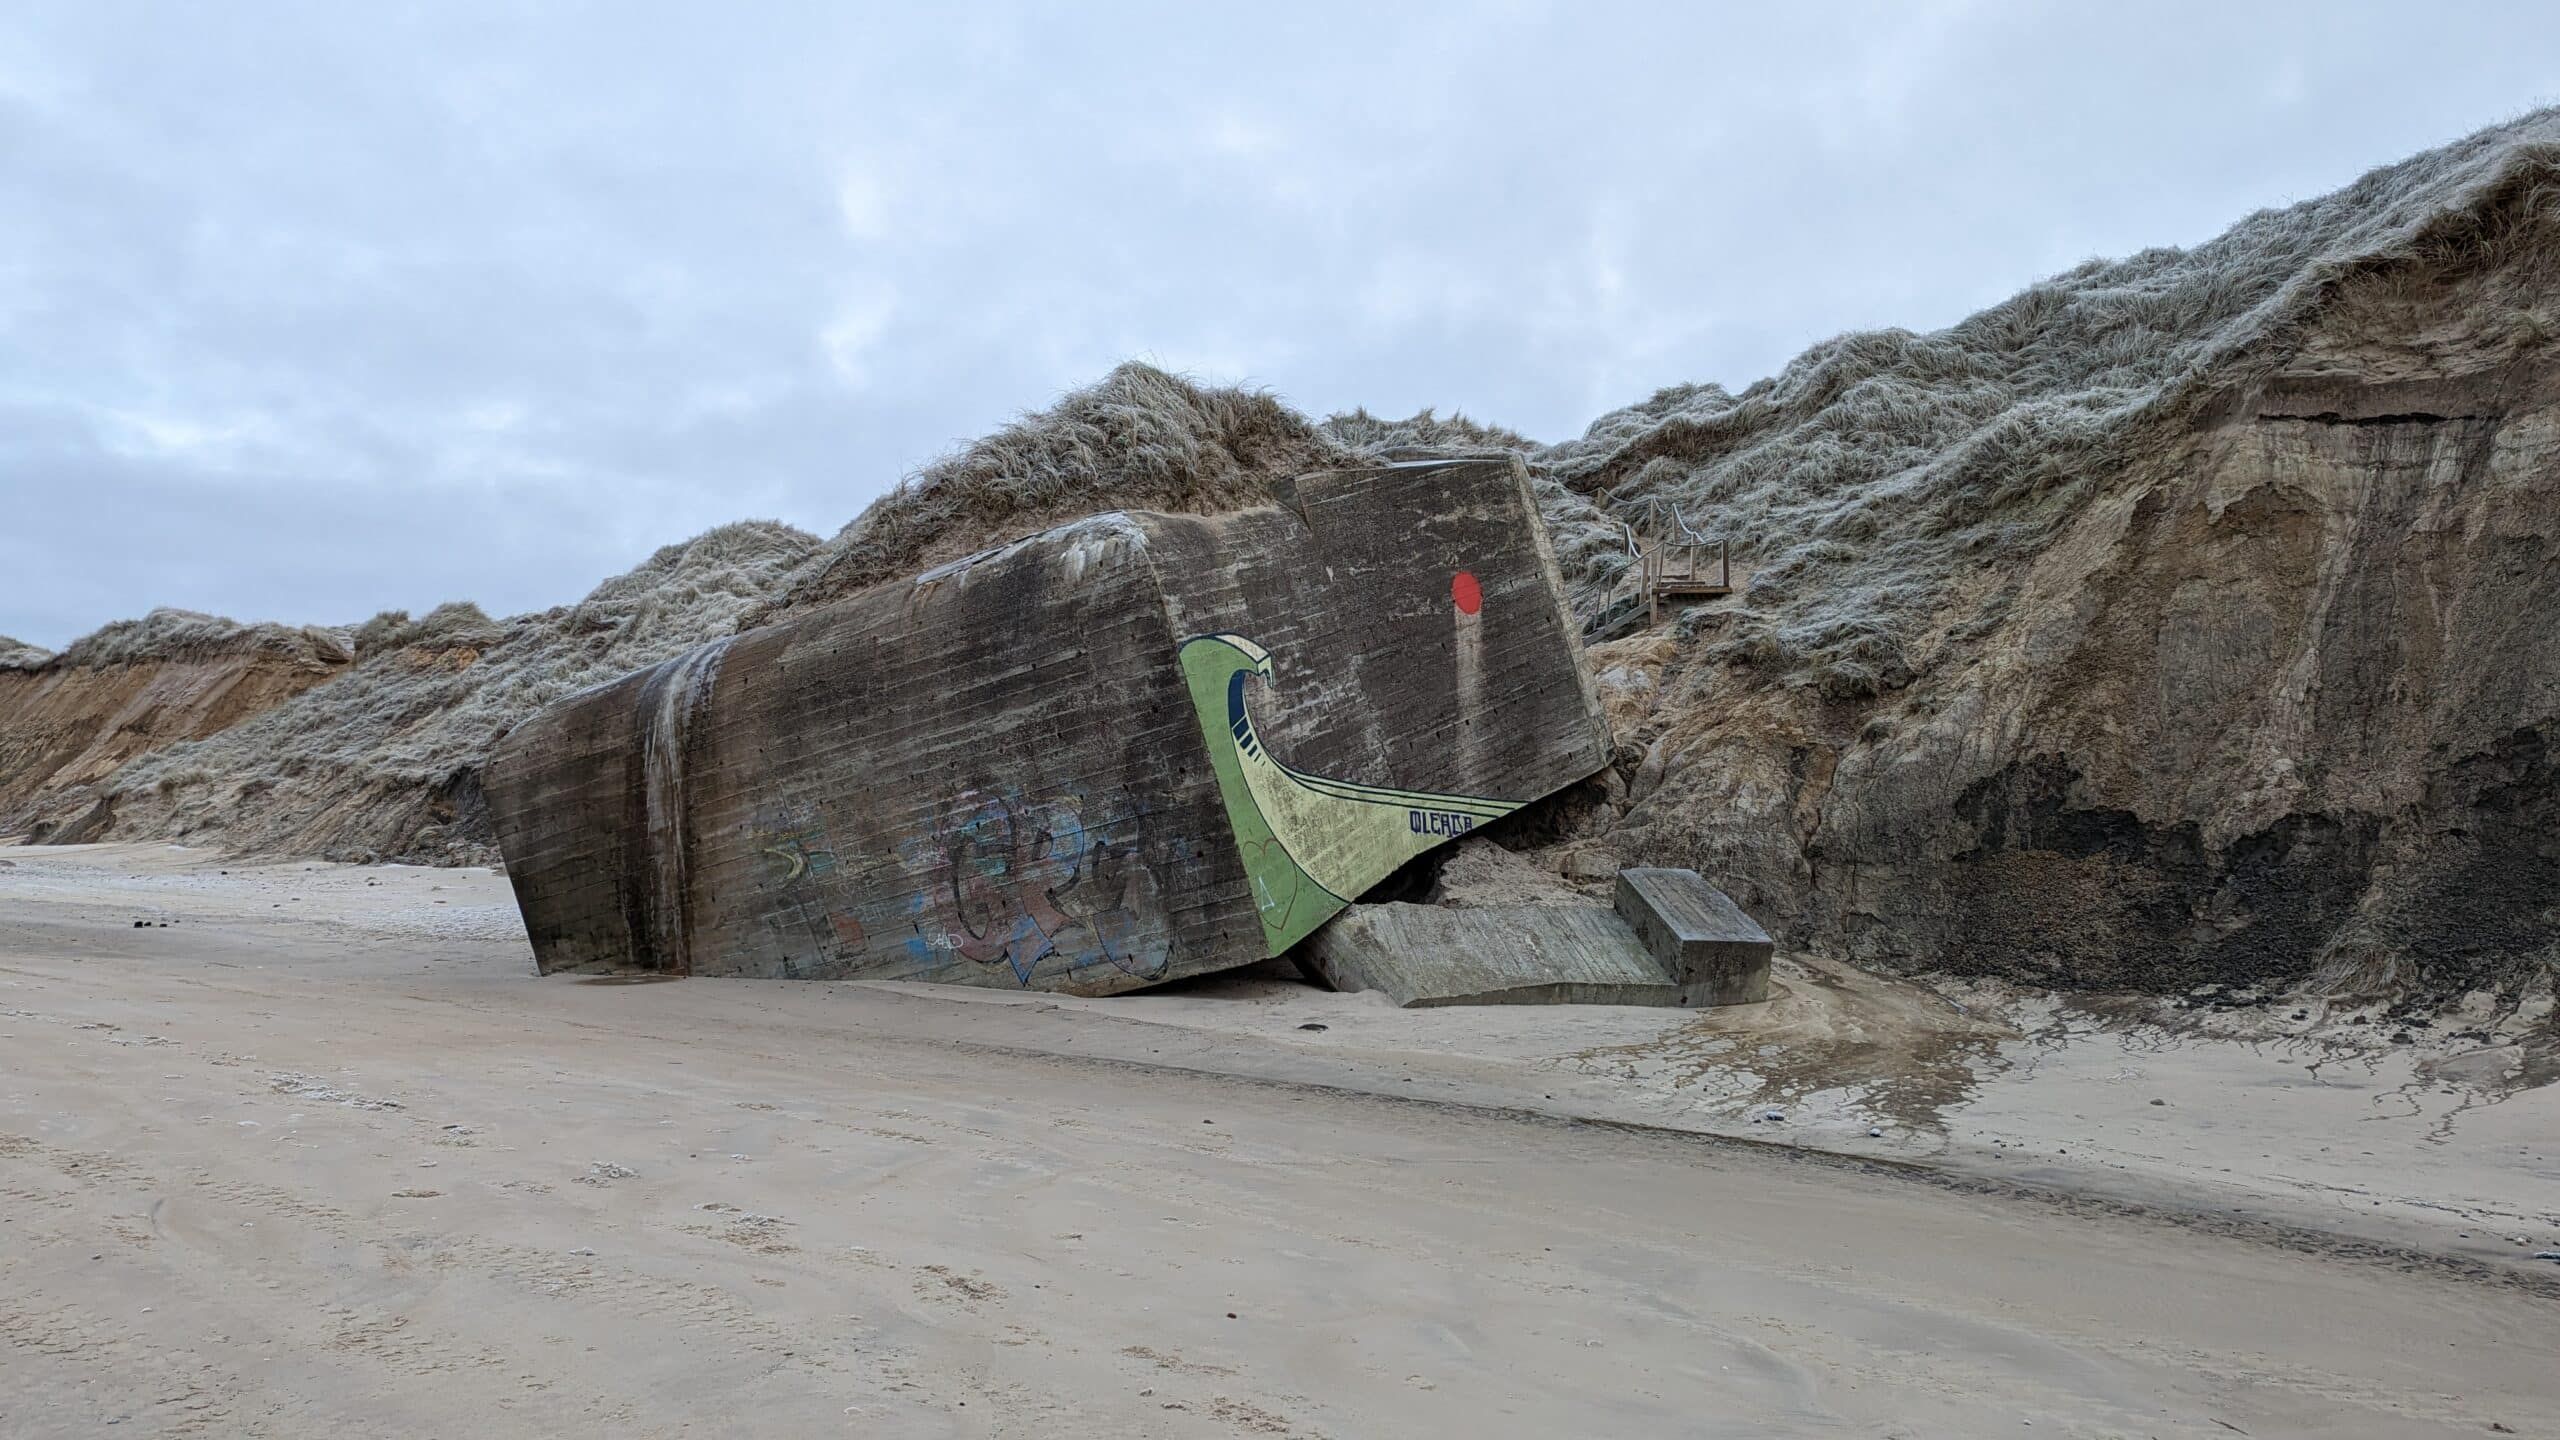 Ein großer Felsen am Strand mit Graffiti darauf.